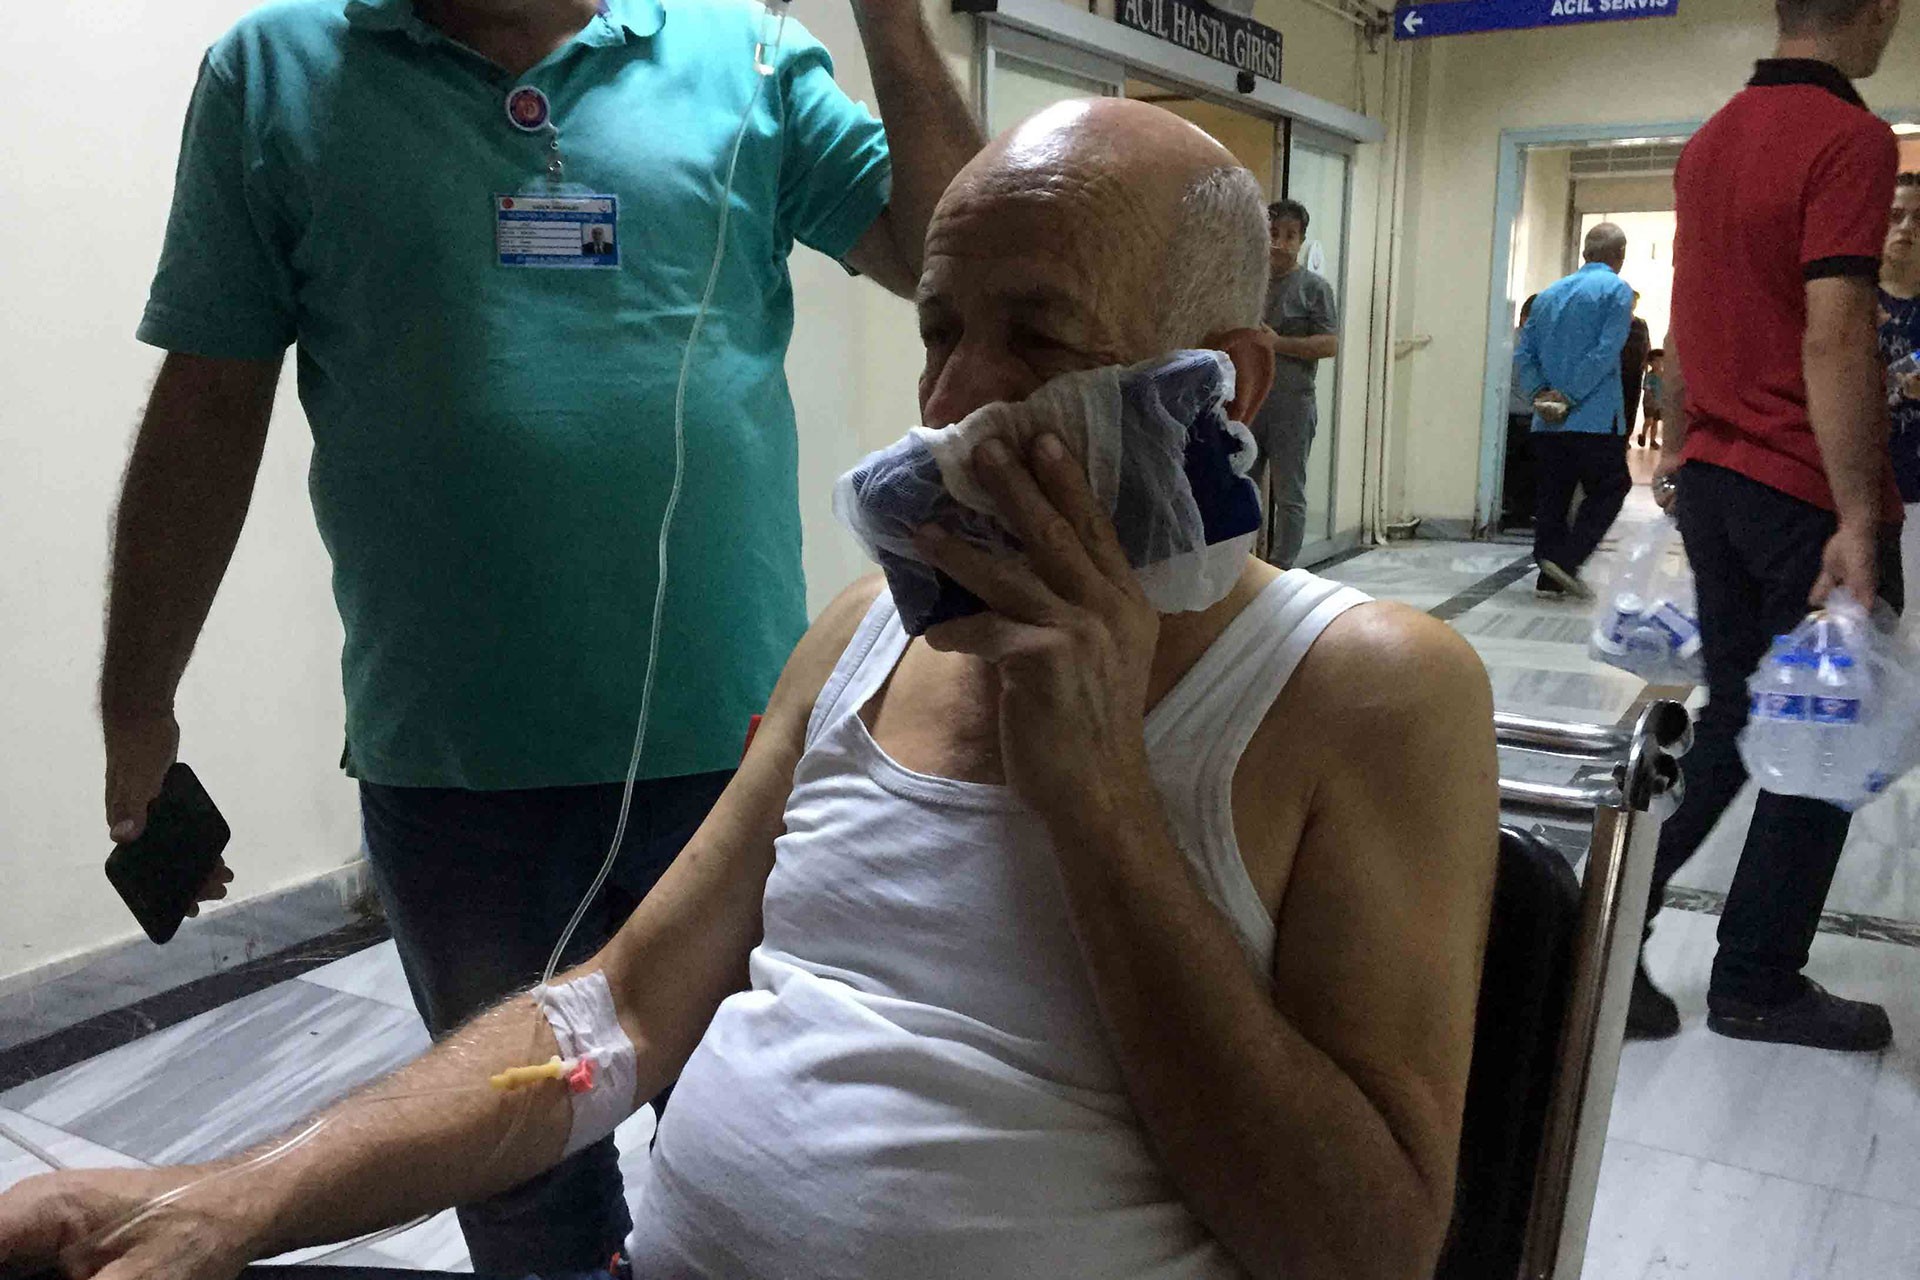 Antep'te bir doktor kimlik istedi diye saldırıya maruz kaldı